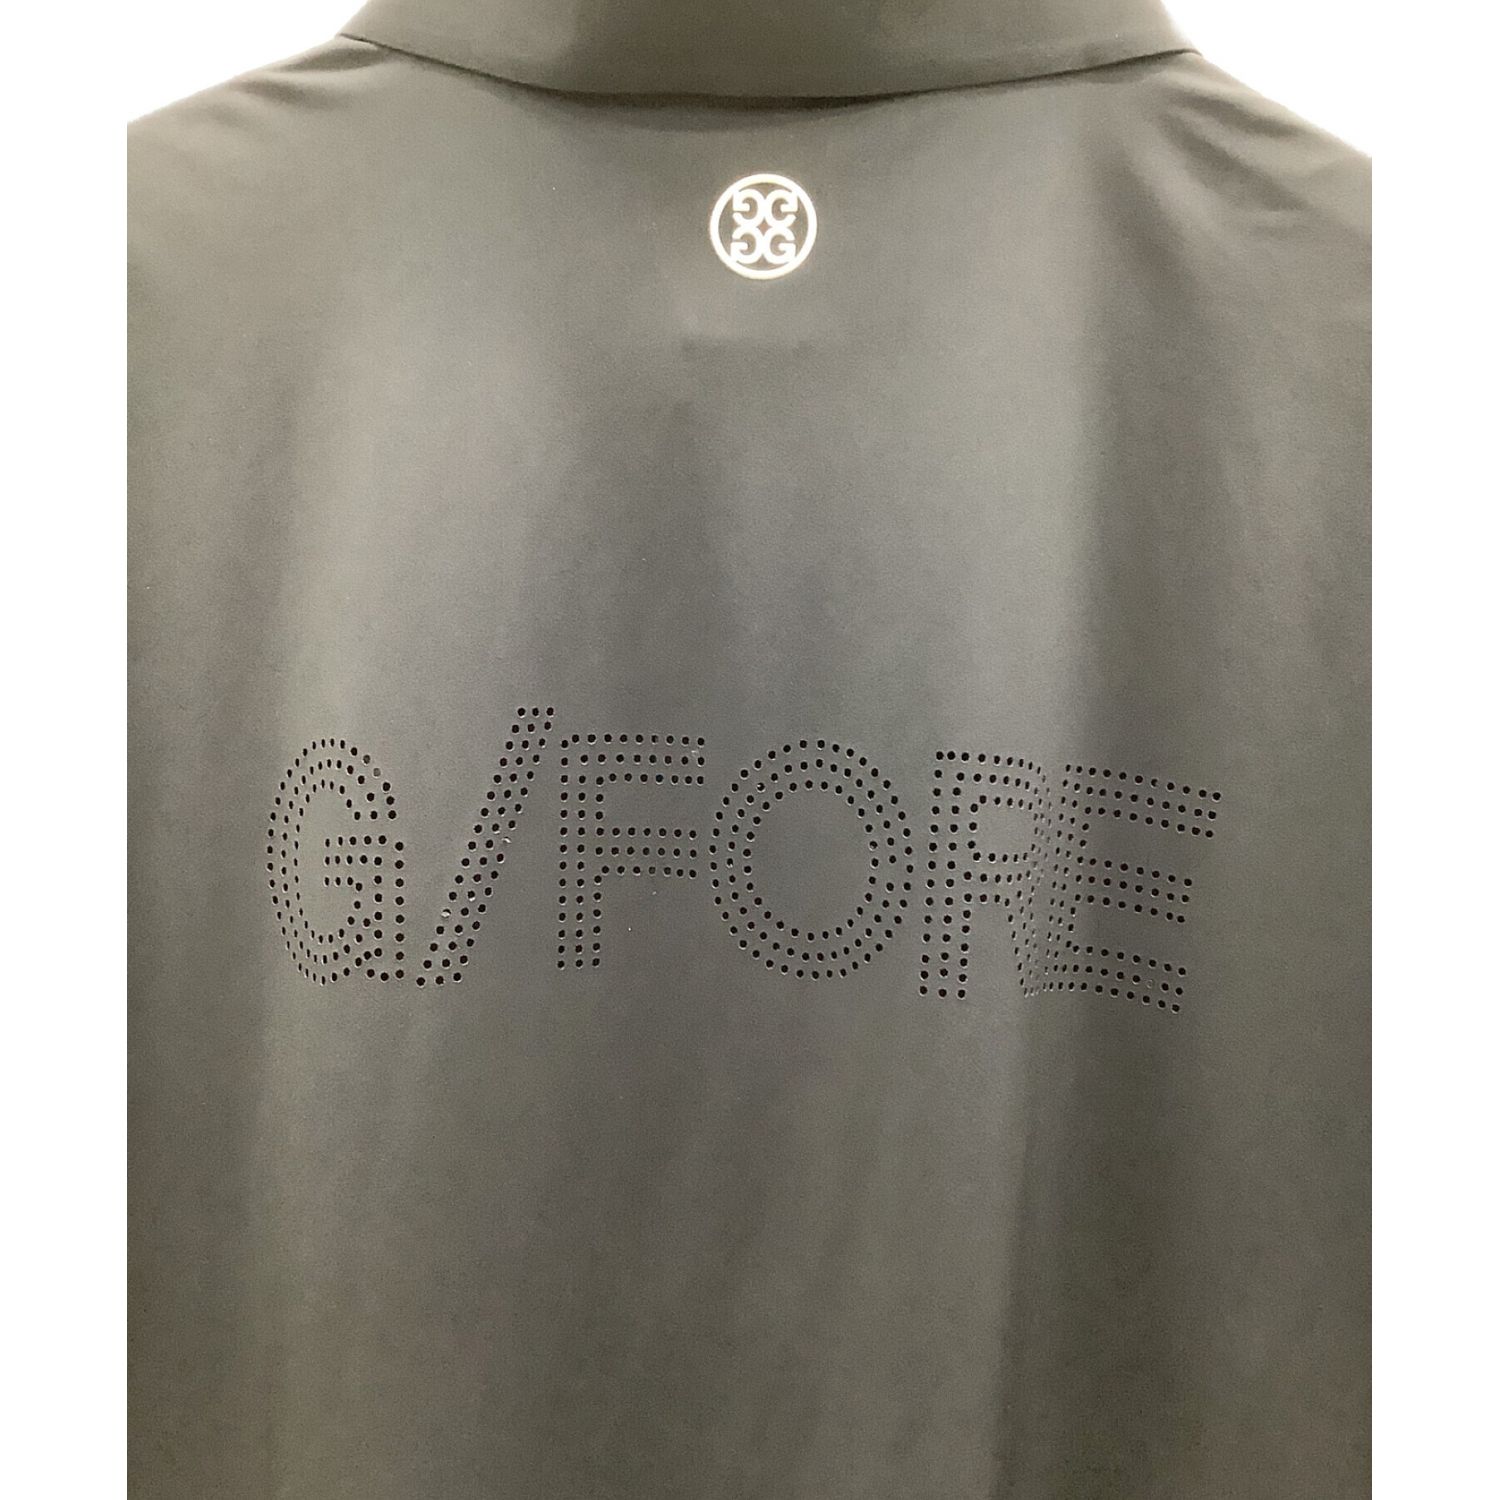 G/FORE (ジーフォア) ゴルフウェア(トップス) メンズ SIZE 3 ブラック 